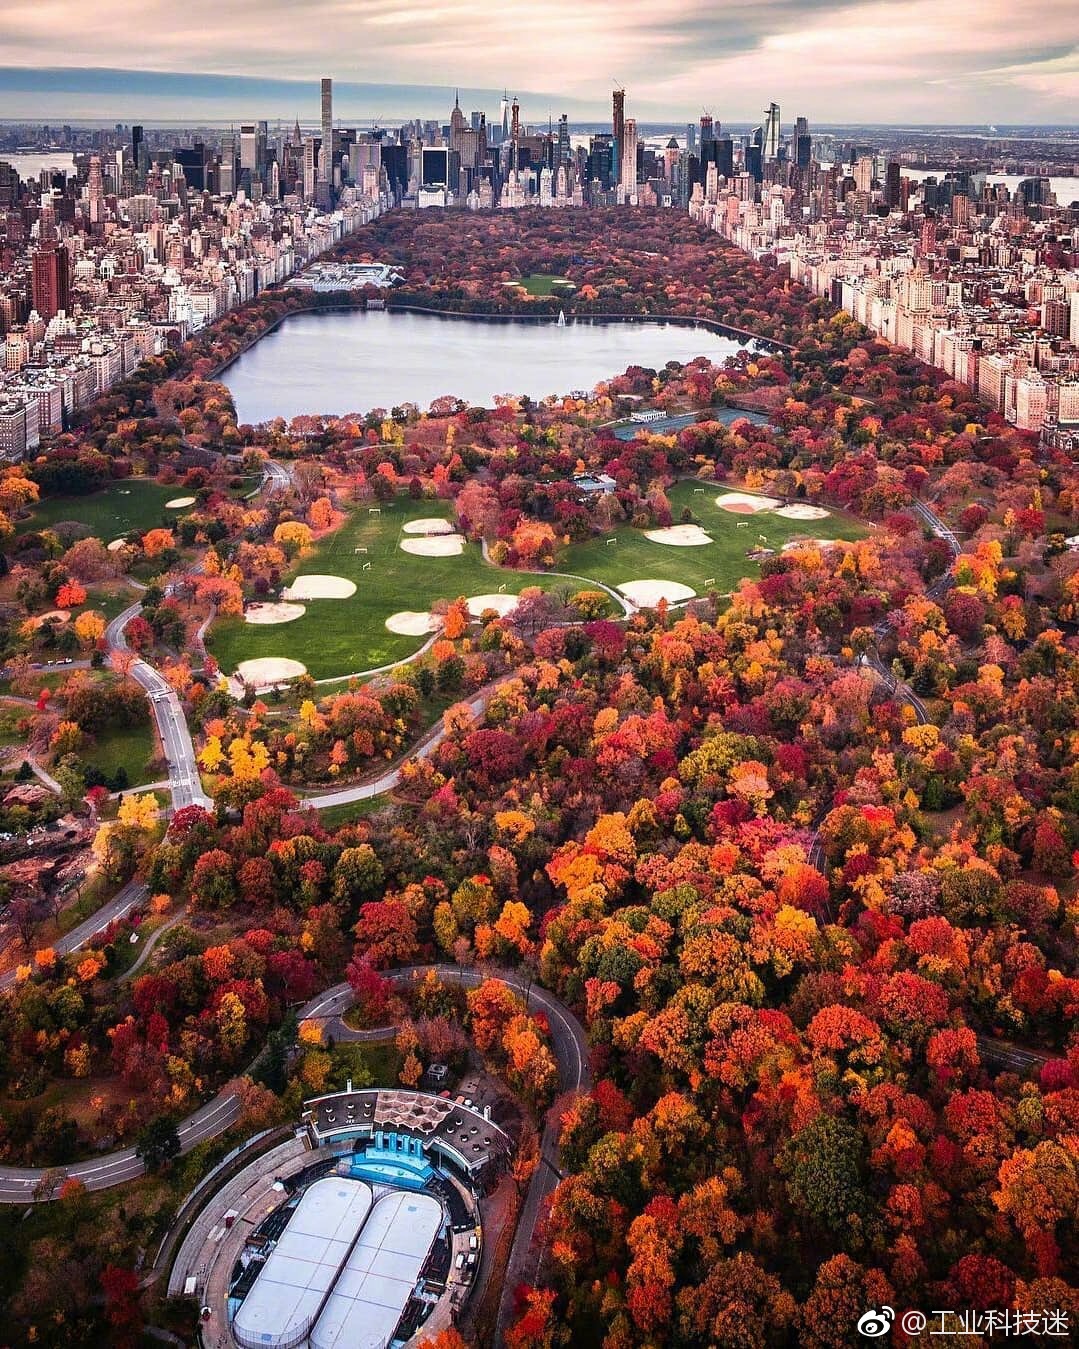 【携程攻略】纽约中央公园适合单独旅行旅游吗,中央公园单独旅行景点推荐/点评